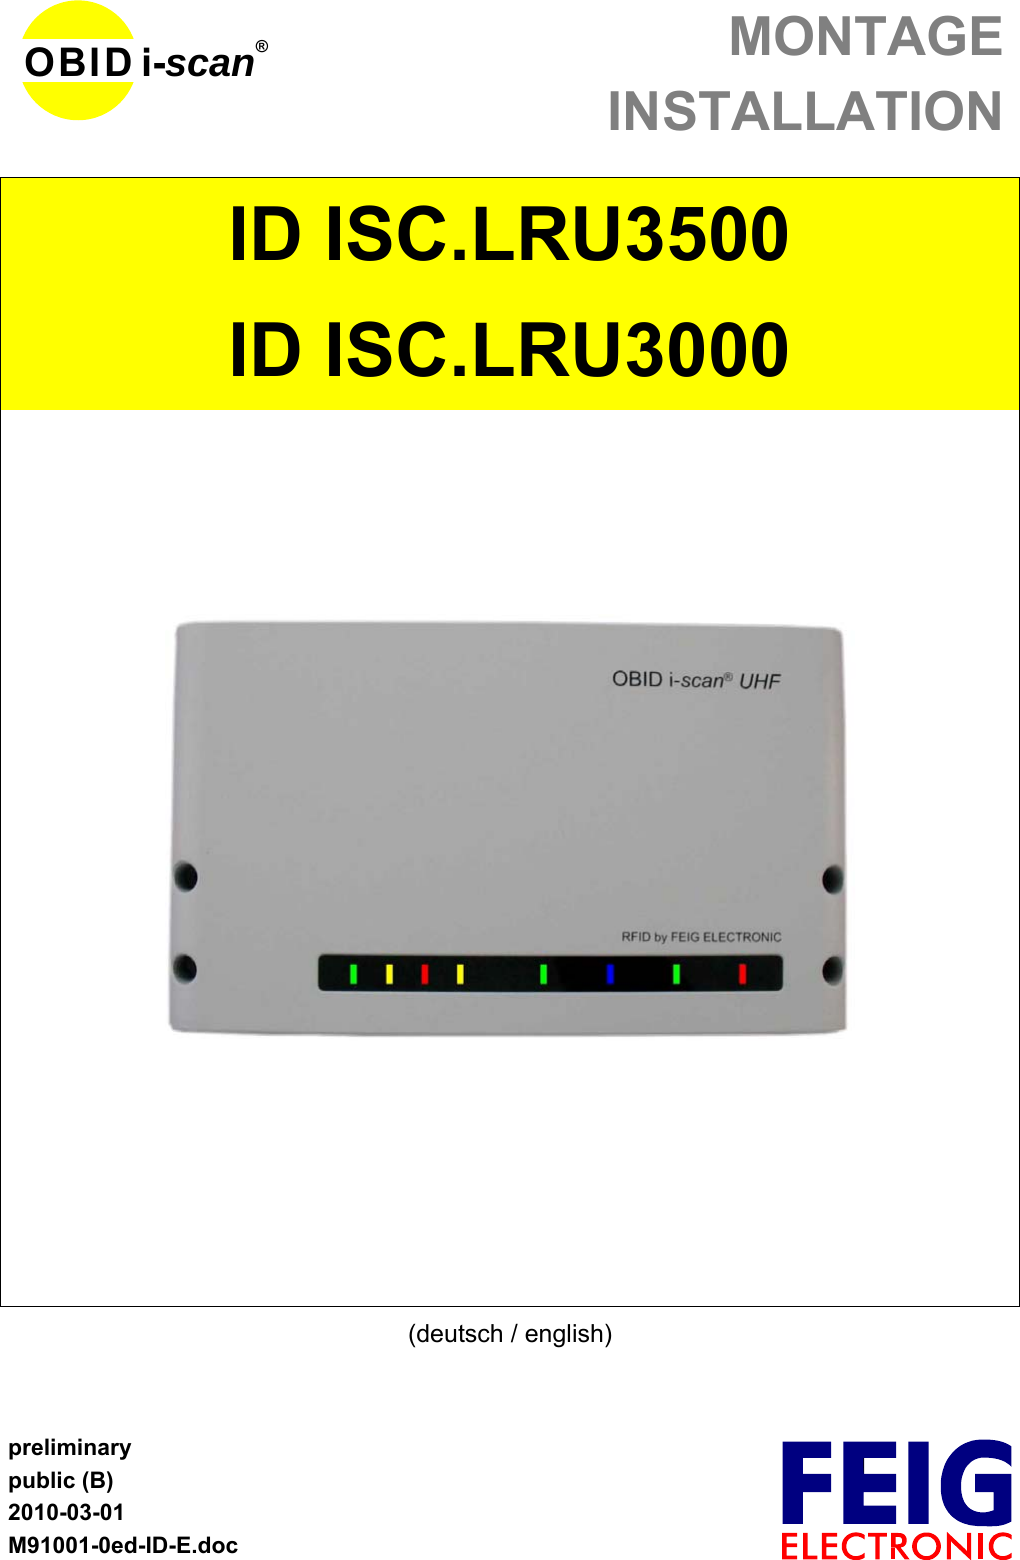 MONTAGEINSTALLATIONpreliminarypublic (B)2010-03-01M91001-0ed-ID-E.docOBID i-scan®ID ISC.LRU3500ID ISC.LRU3000(deutsch / english)